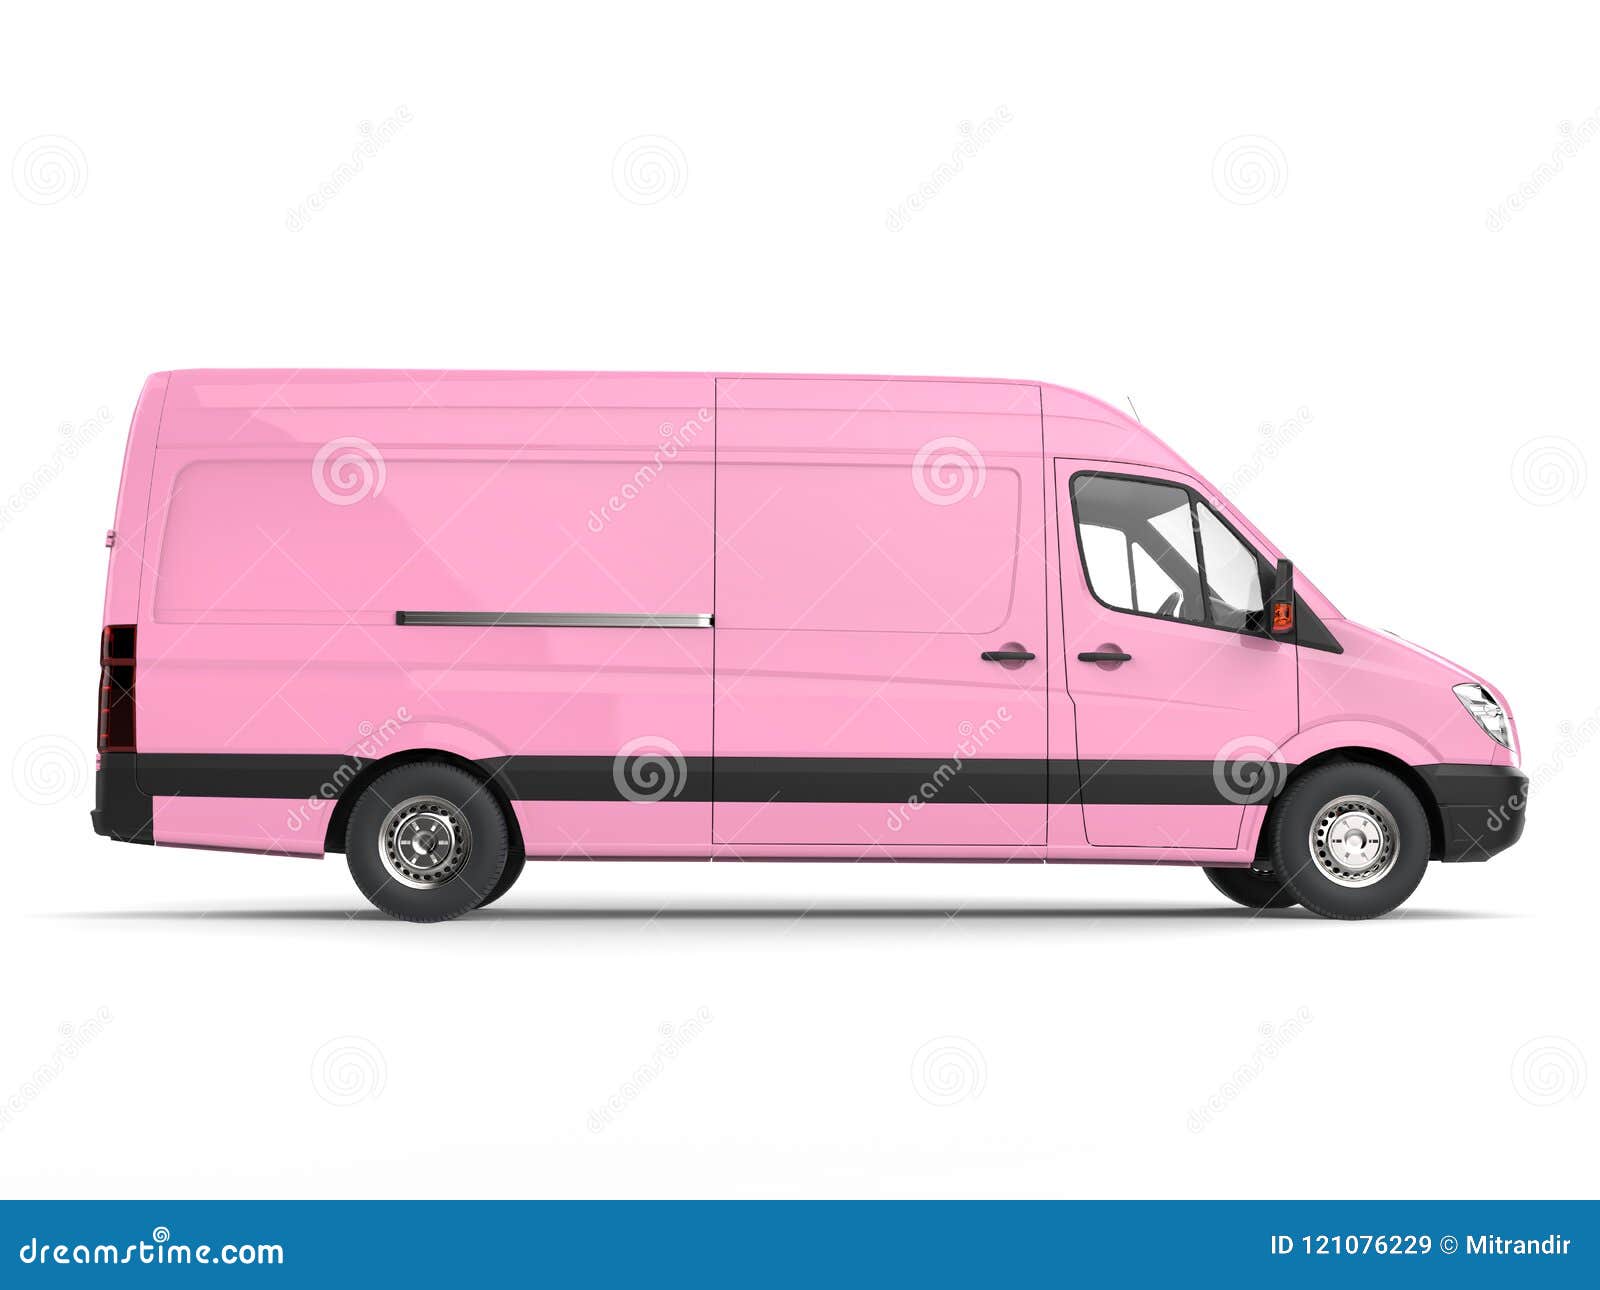 pink van